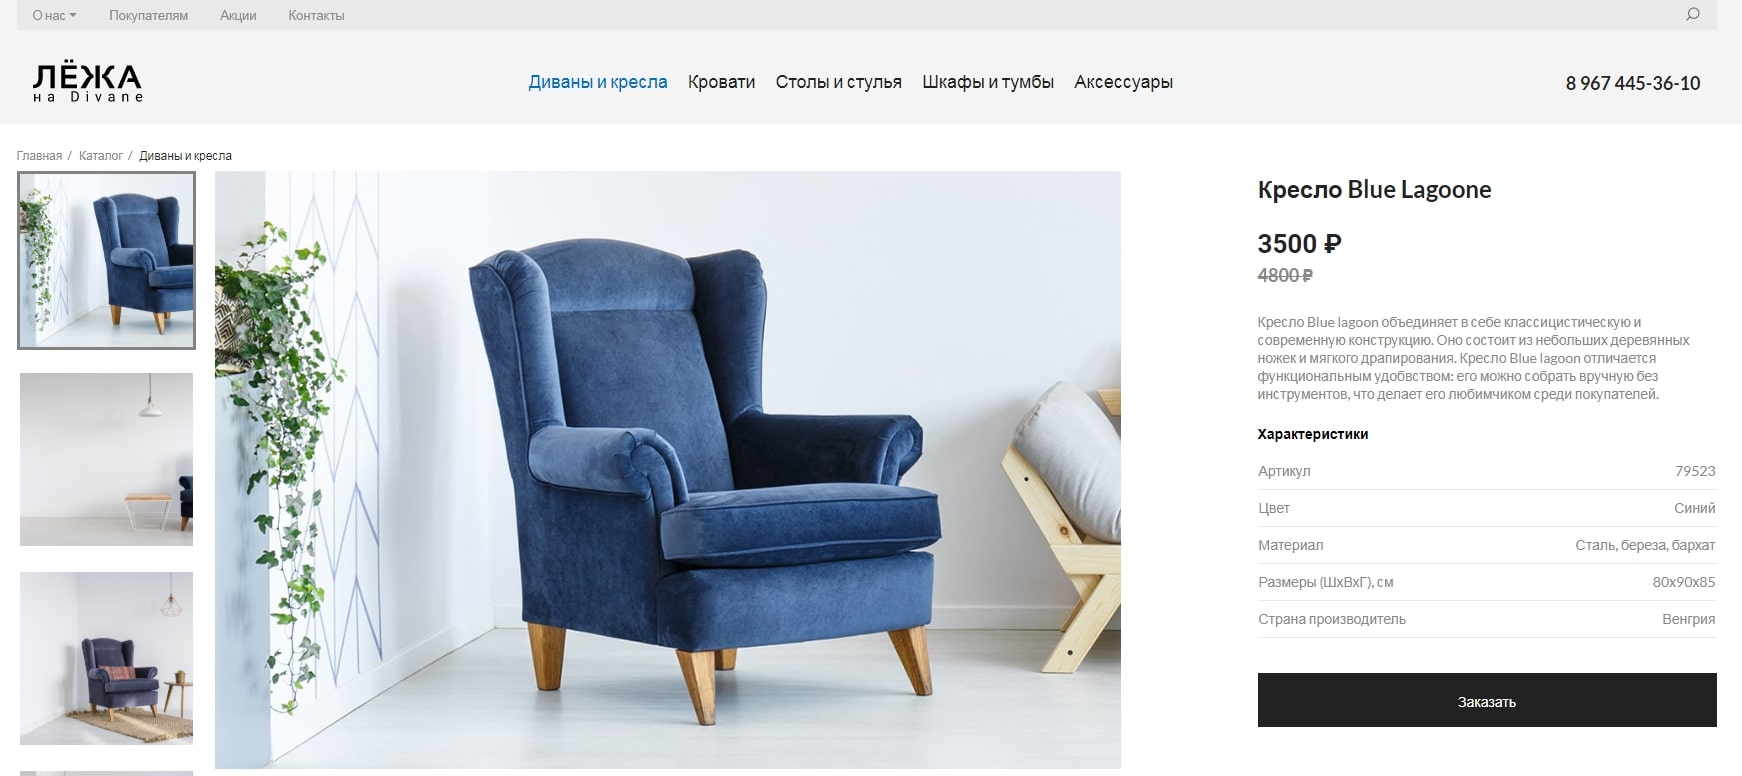 АйПи Диван - сайт-каталог мягкой и корпусной мебели с формой заказа